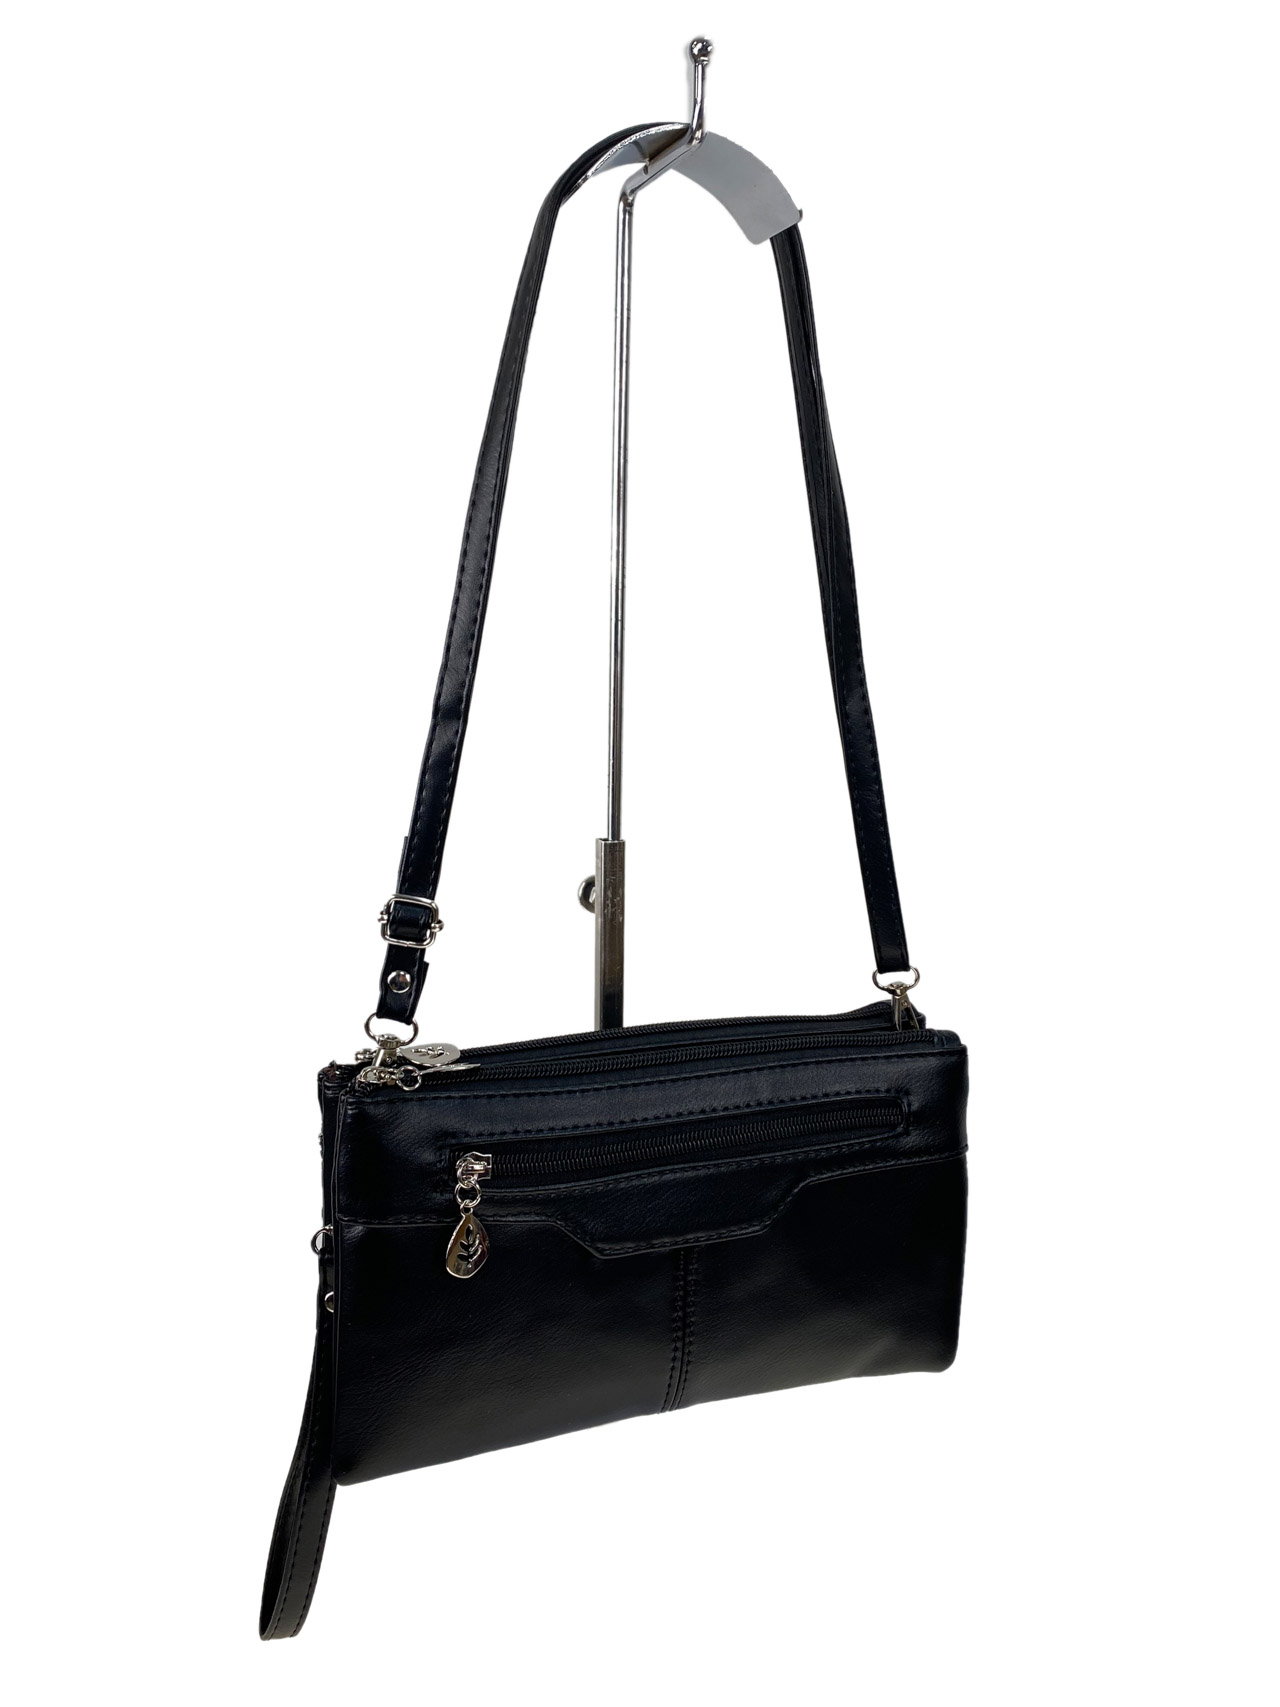 Женская сумка клатч из искусственной кожи, цвет черный